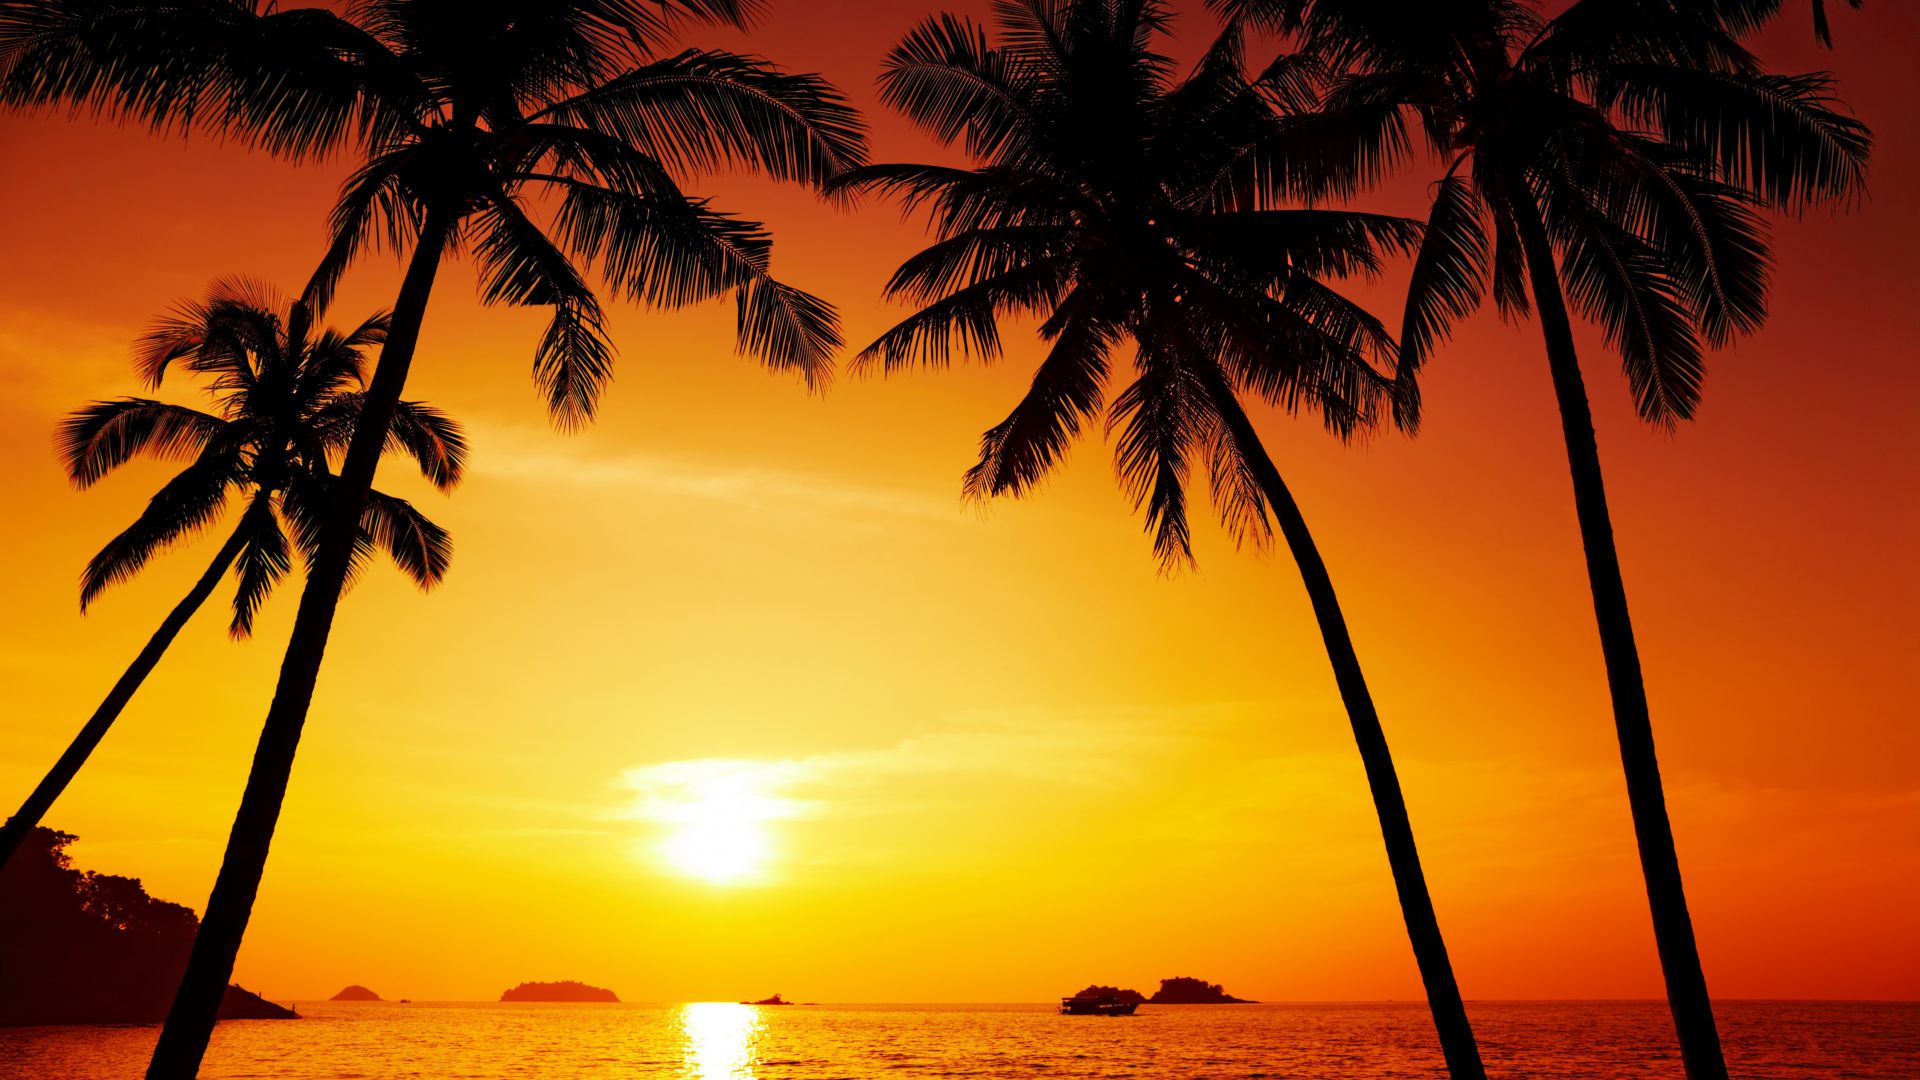 Океан, 5k, 4k, пальмы, закат, Ocean, 5k, 4k wallpaper, palms, sunset (horizontal)